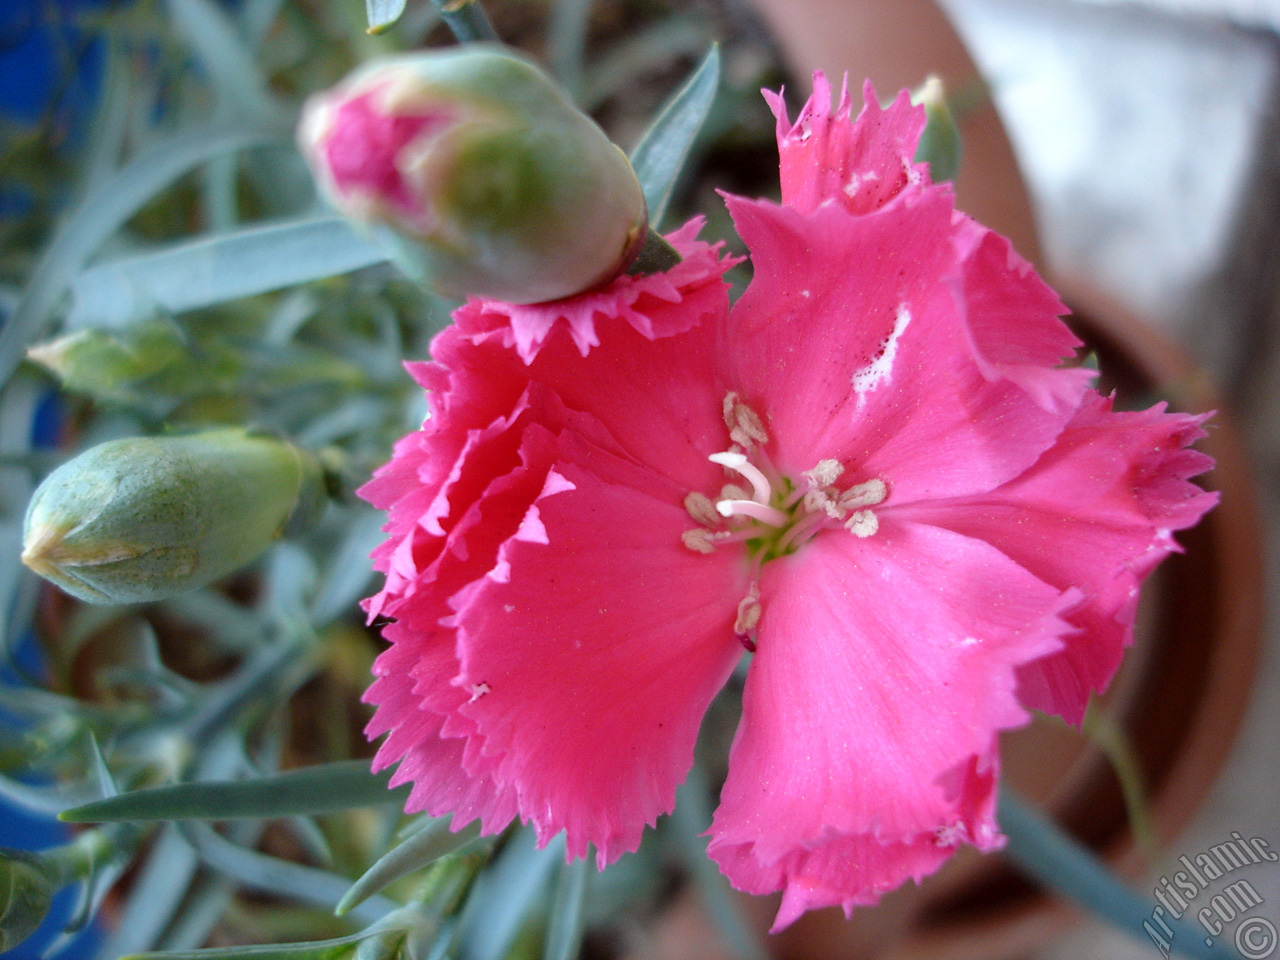 Pink color Carnation -Clove Pink- flower.
